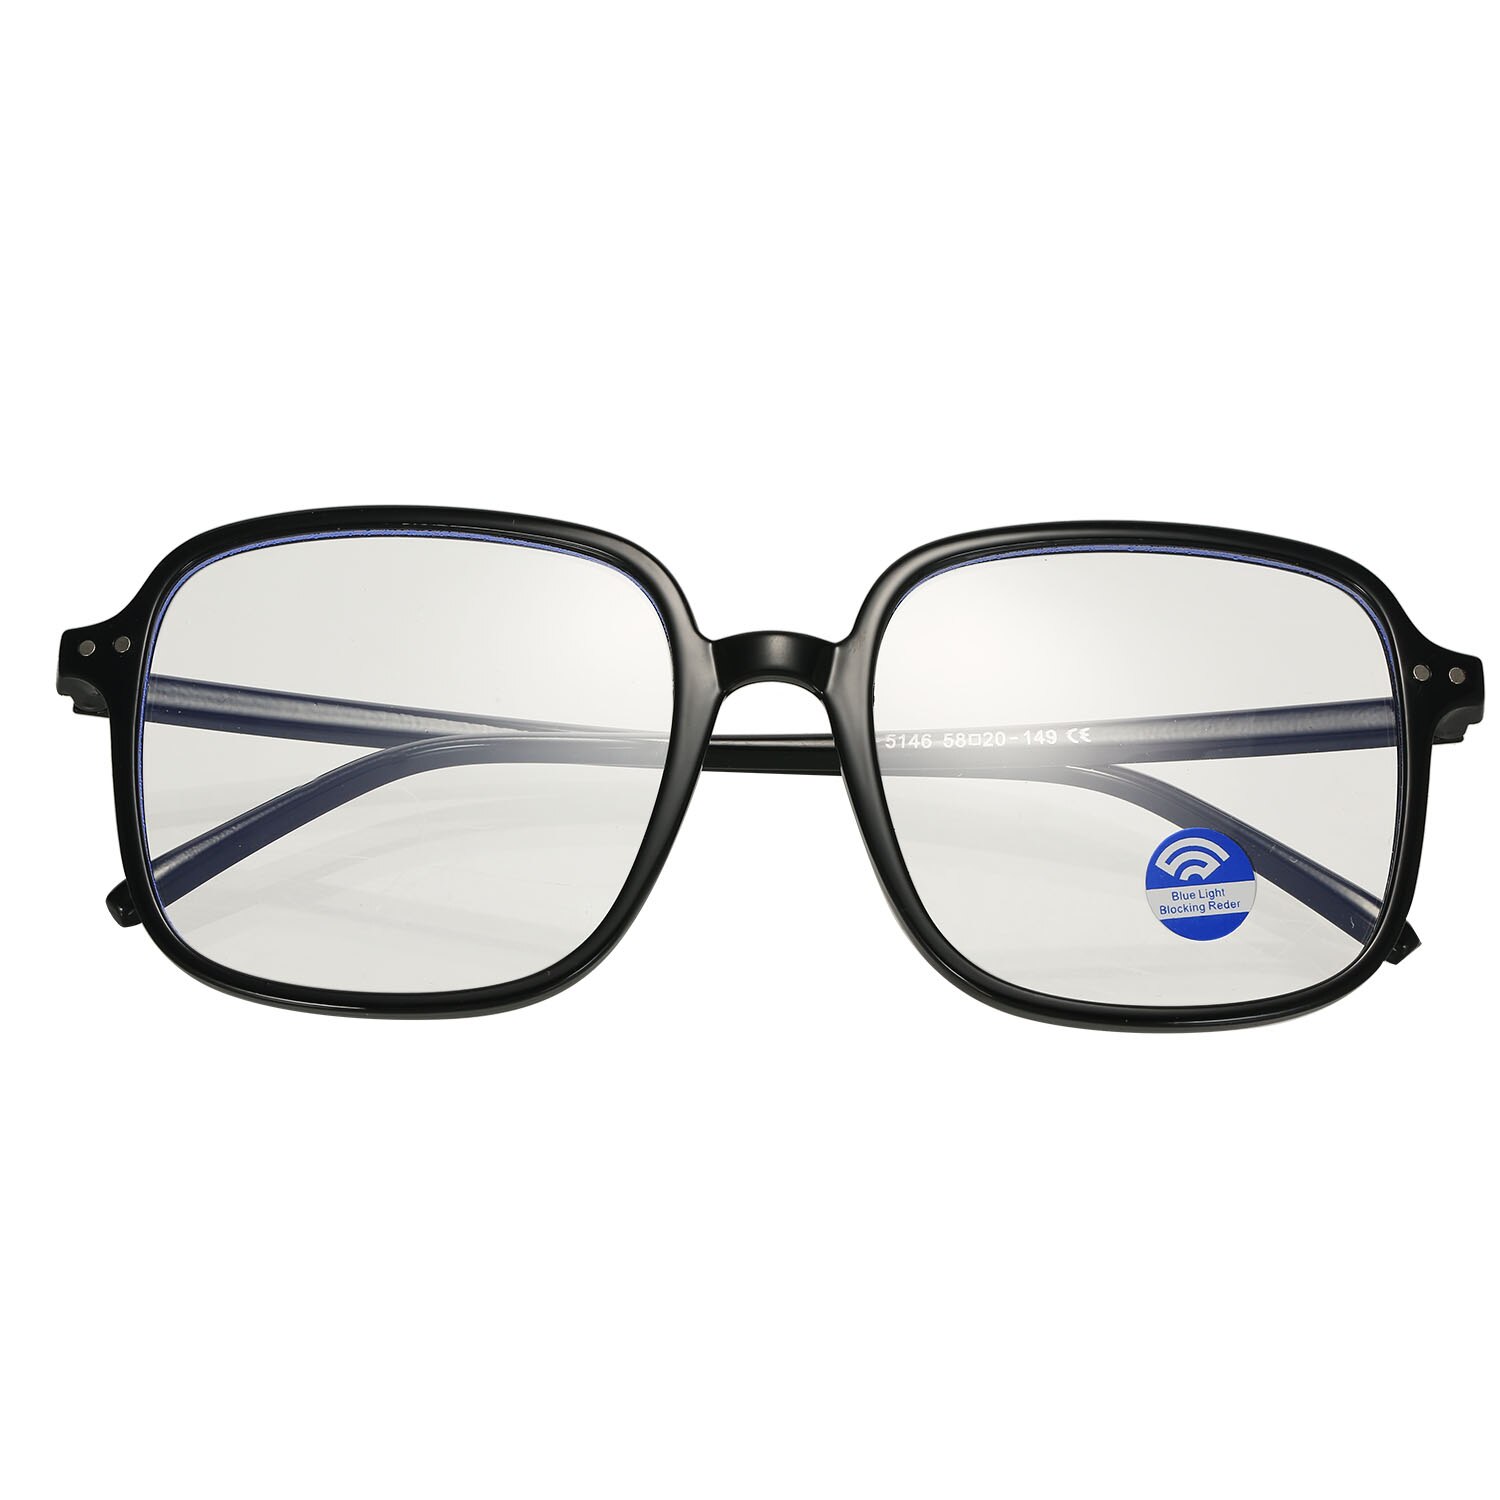 Unisex briller anti-blå lys briller ultra lys firkantede rammer briller computer briller fleksible briller læsebriller: Blå